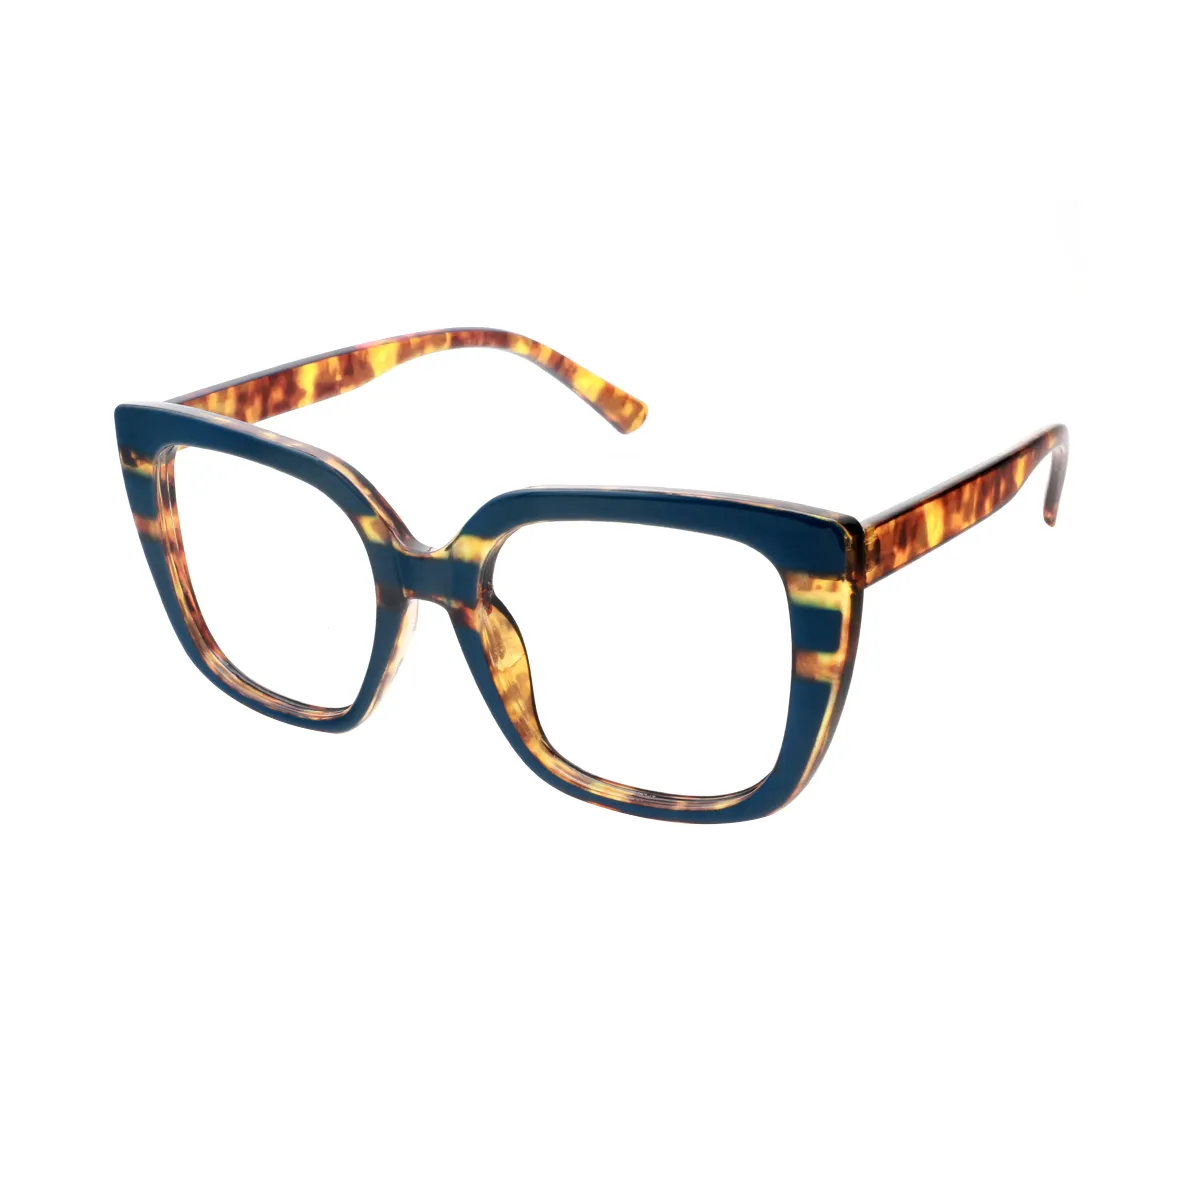 Delilah - Square Blue Glasses for Women